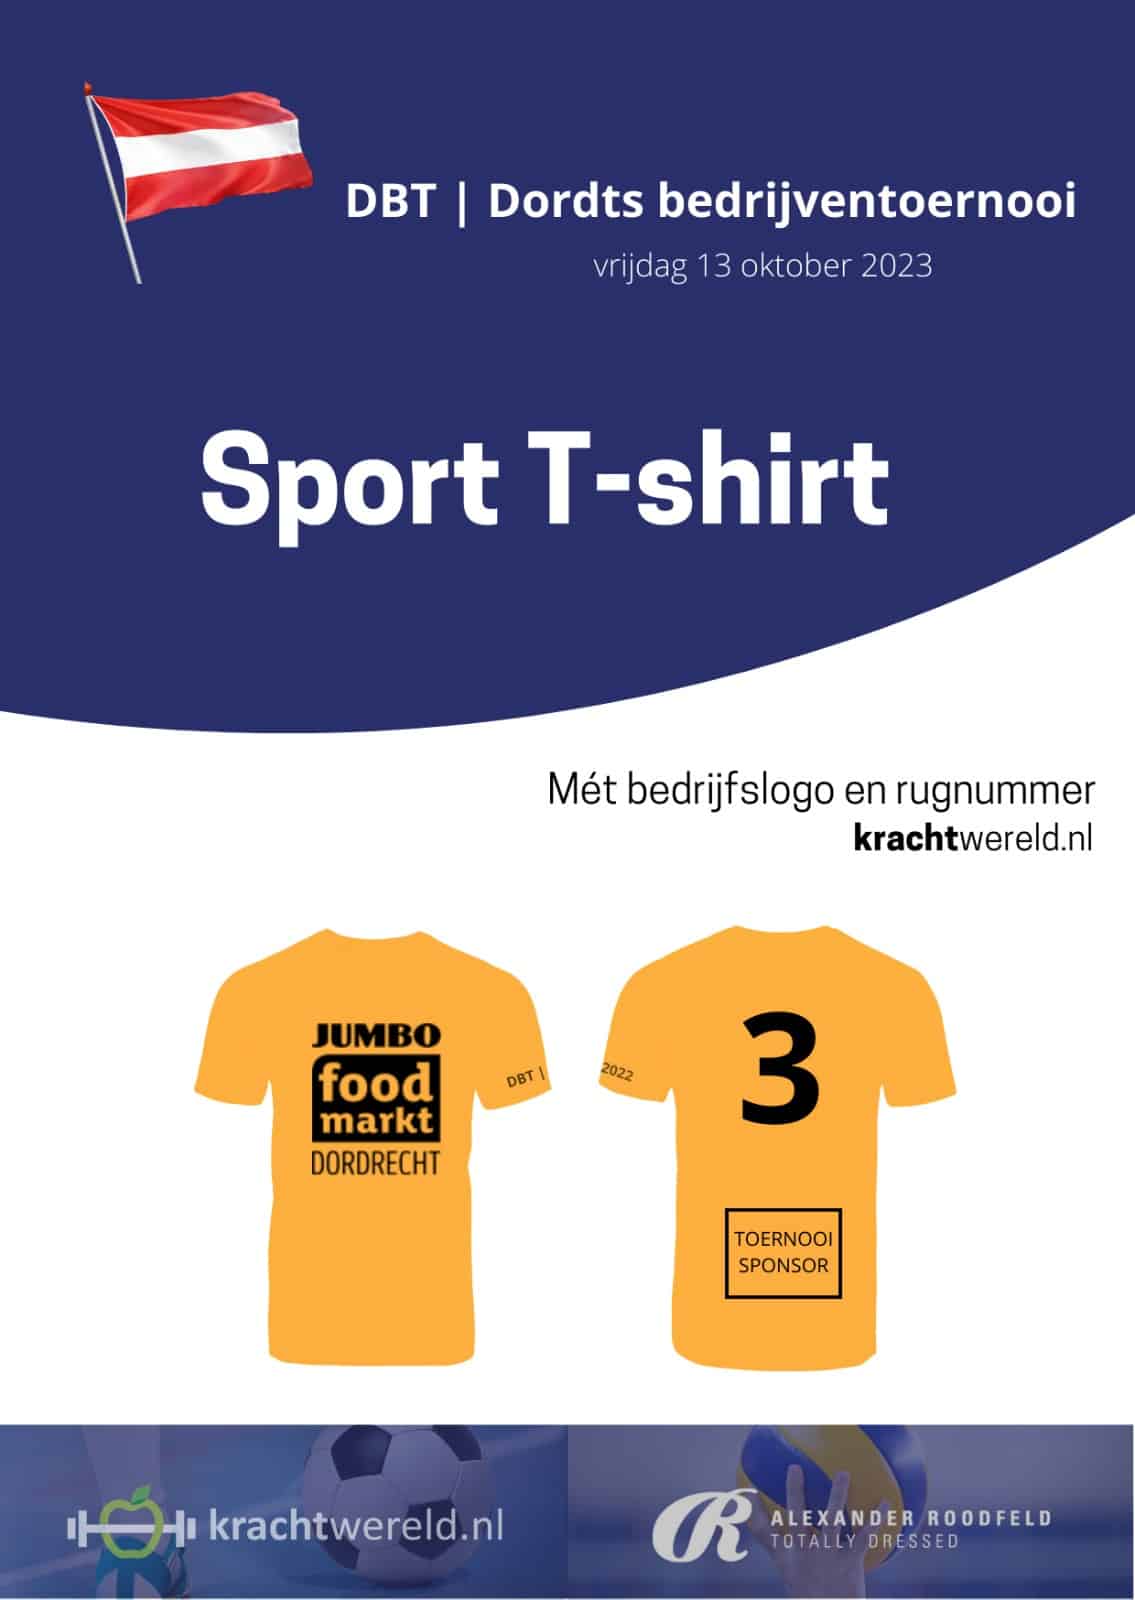 DBT Sport T-shirt